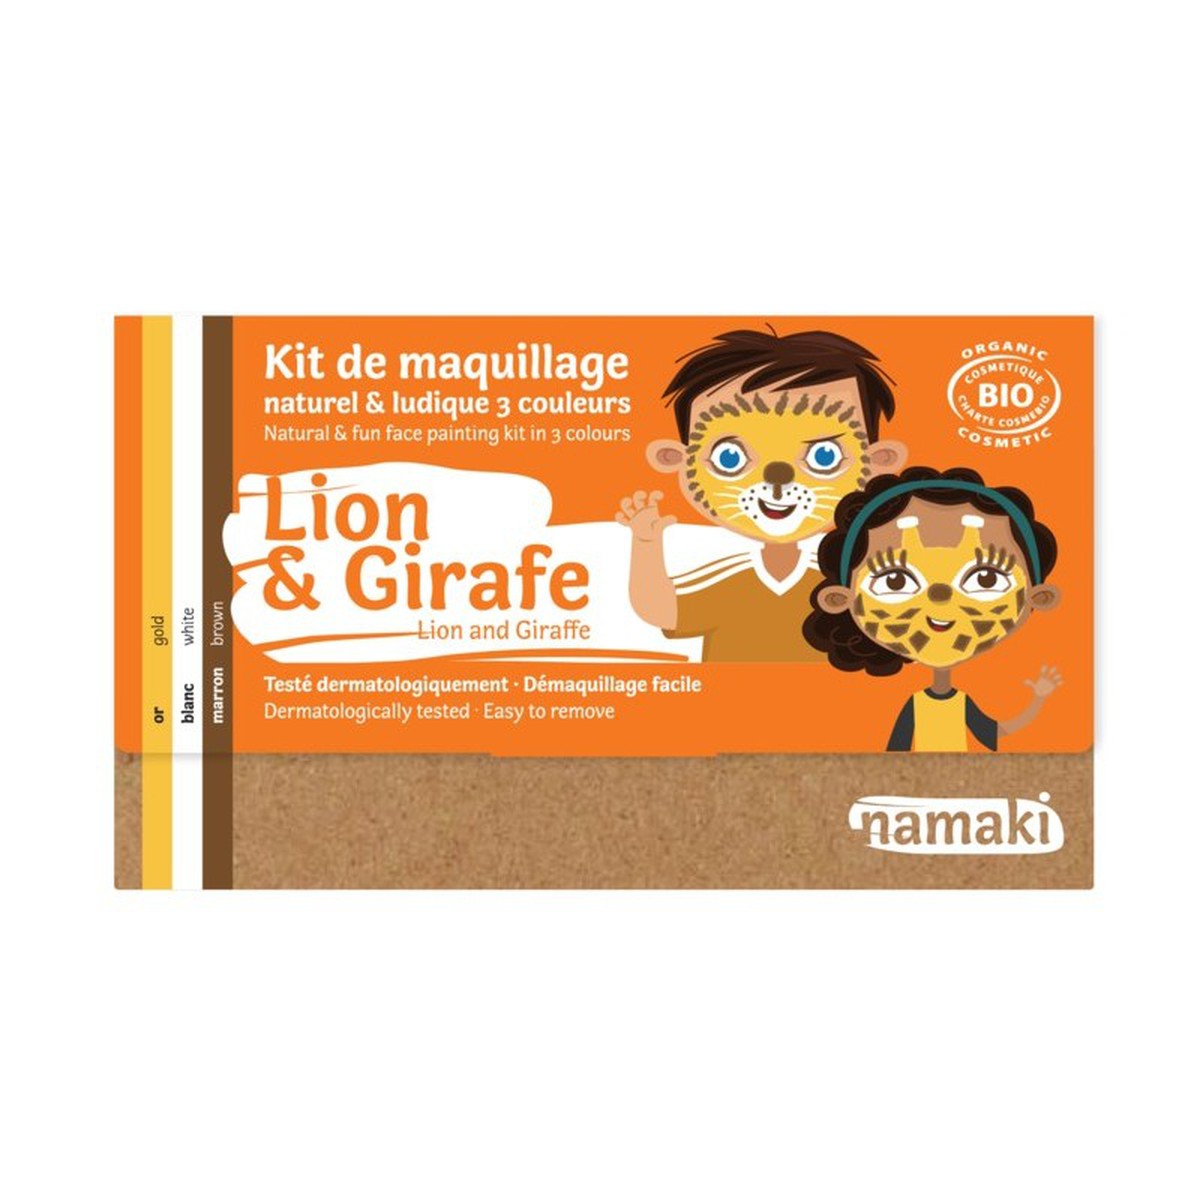   Lion & Girafe (French/English Label)  